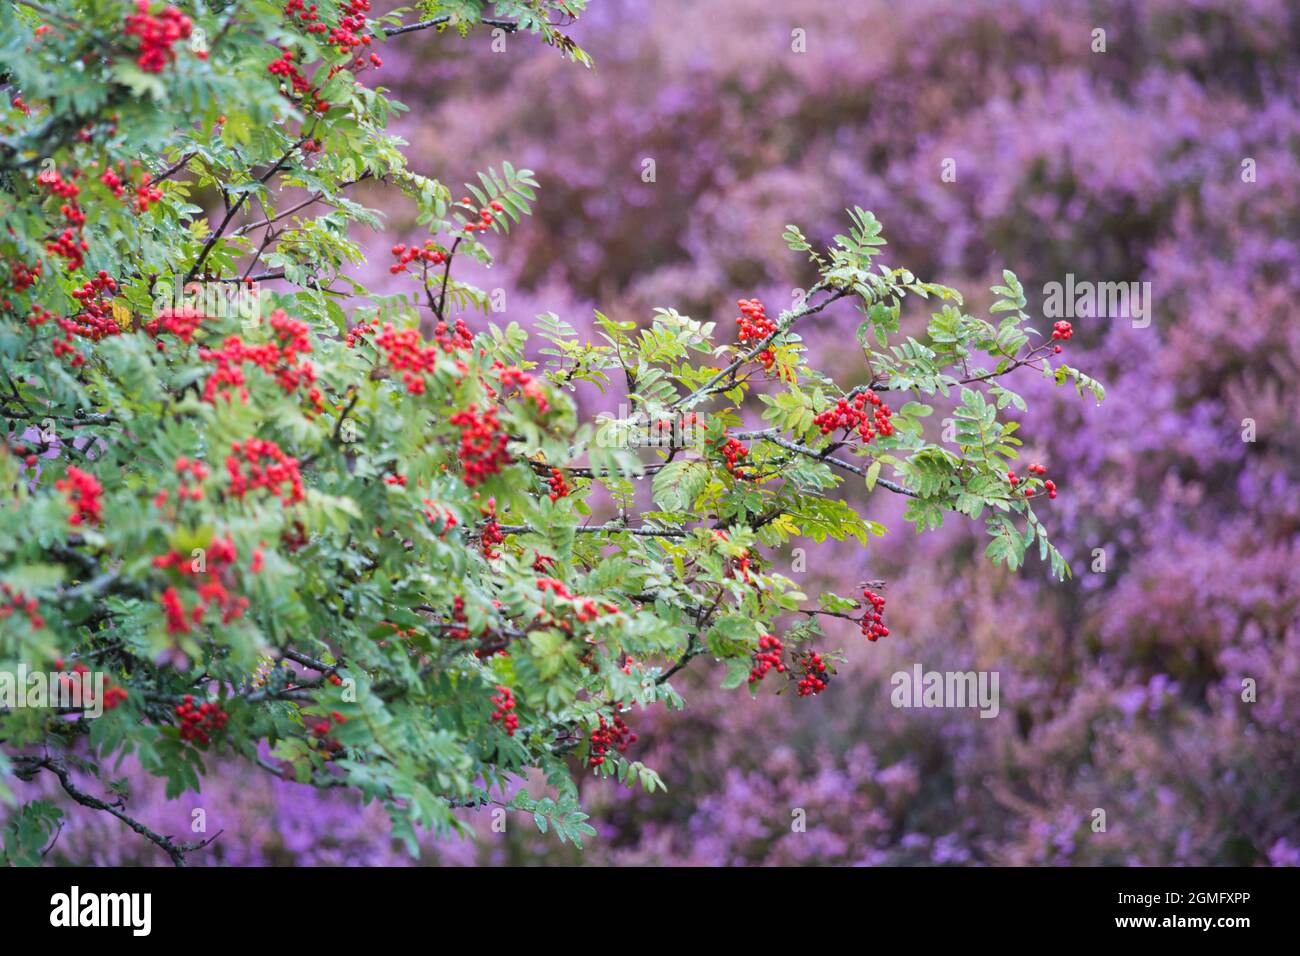 Albero di Rowan con bacche rosse lucide, erica viola e cespugli di mirtilli sulle brughiere nel cuore del parco nazionale del Northumberland nell'Inghilterra nordorientale Foto Stock